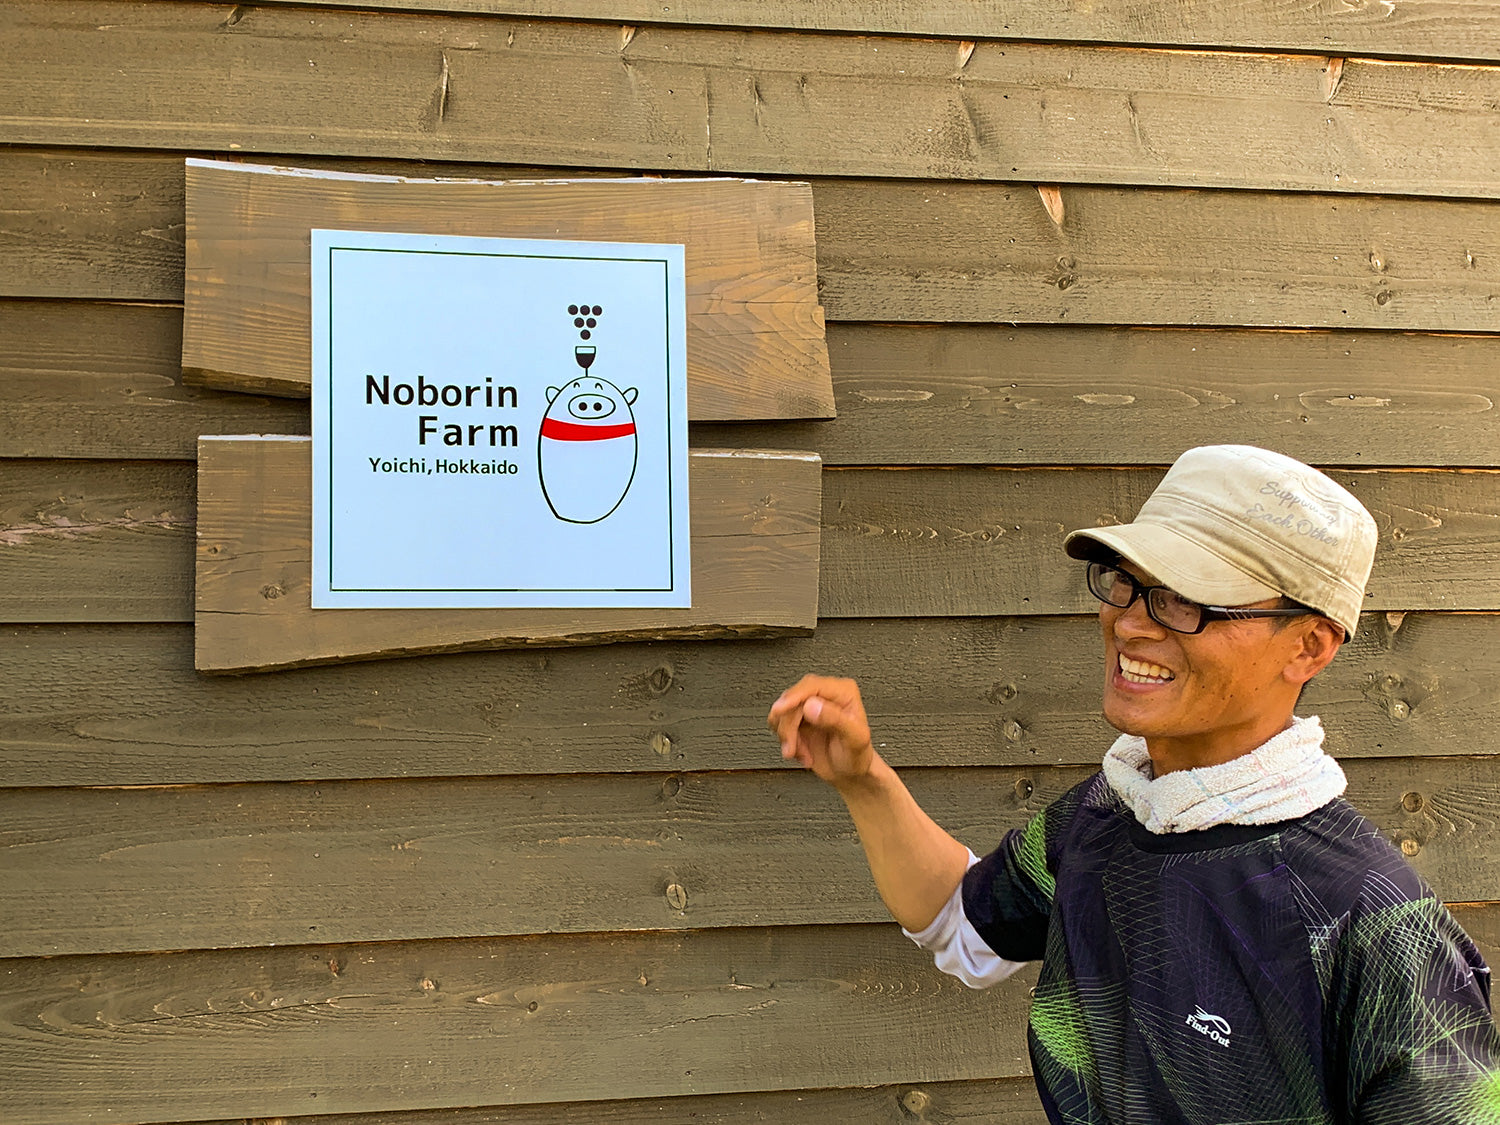 Noborin Farmの「ロゴの上の部分は形になった」と語る木原さん。次のステップは、ロゴの下部分、豚の放牧による有畜循環農業の実現だ。